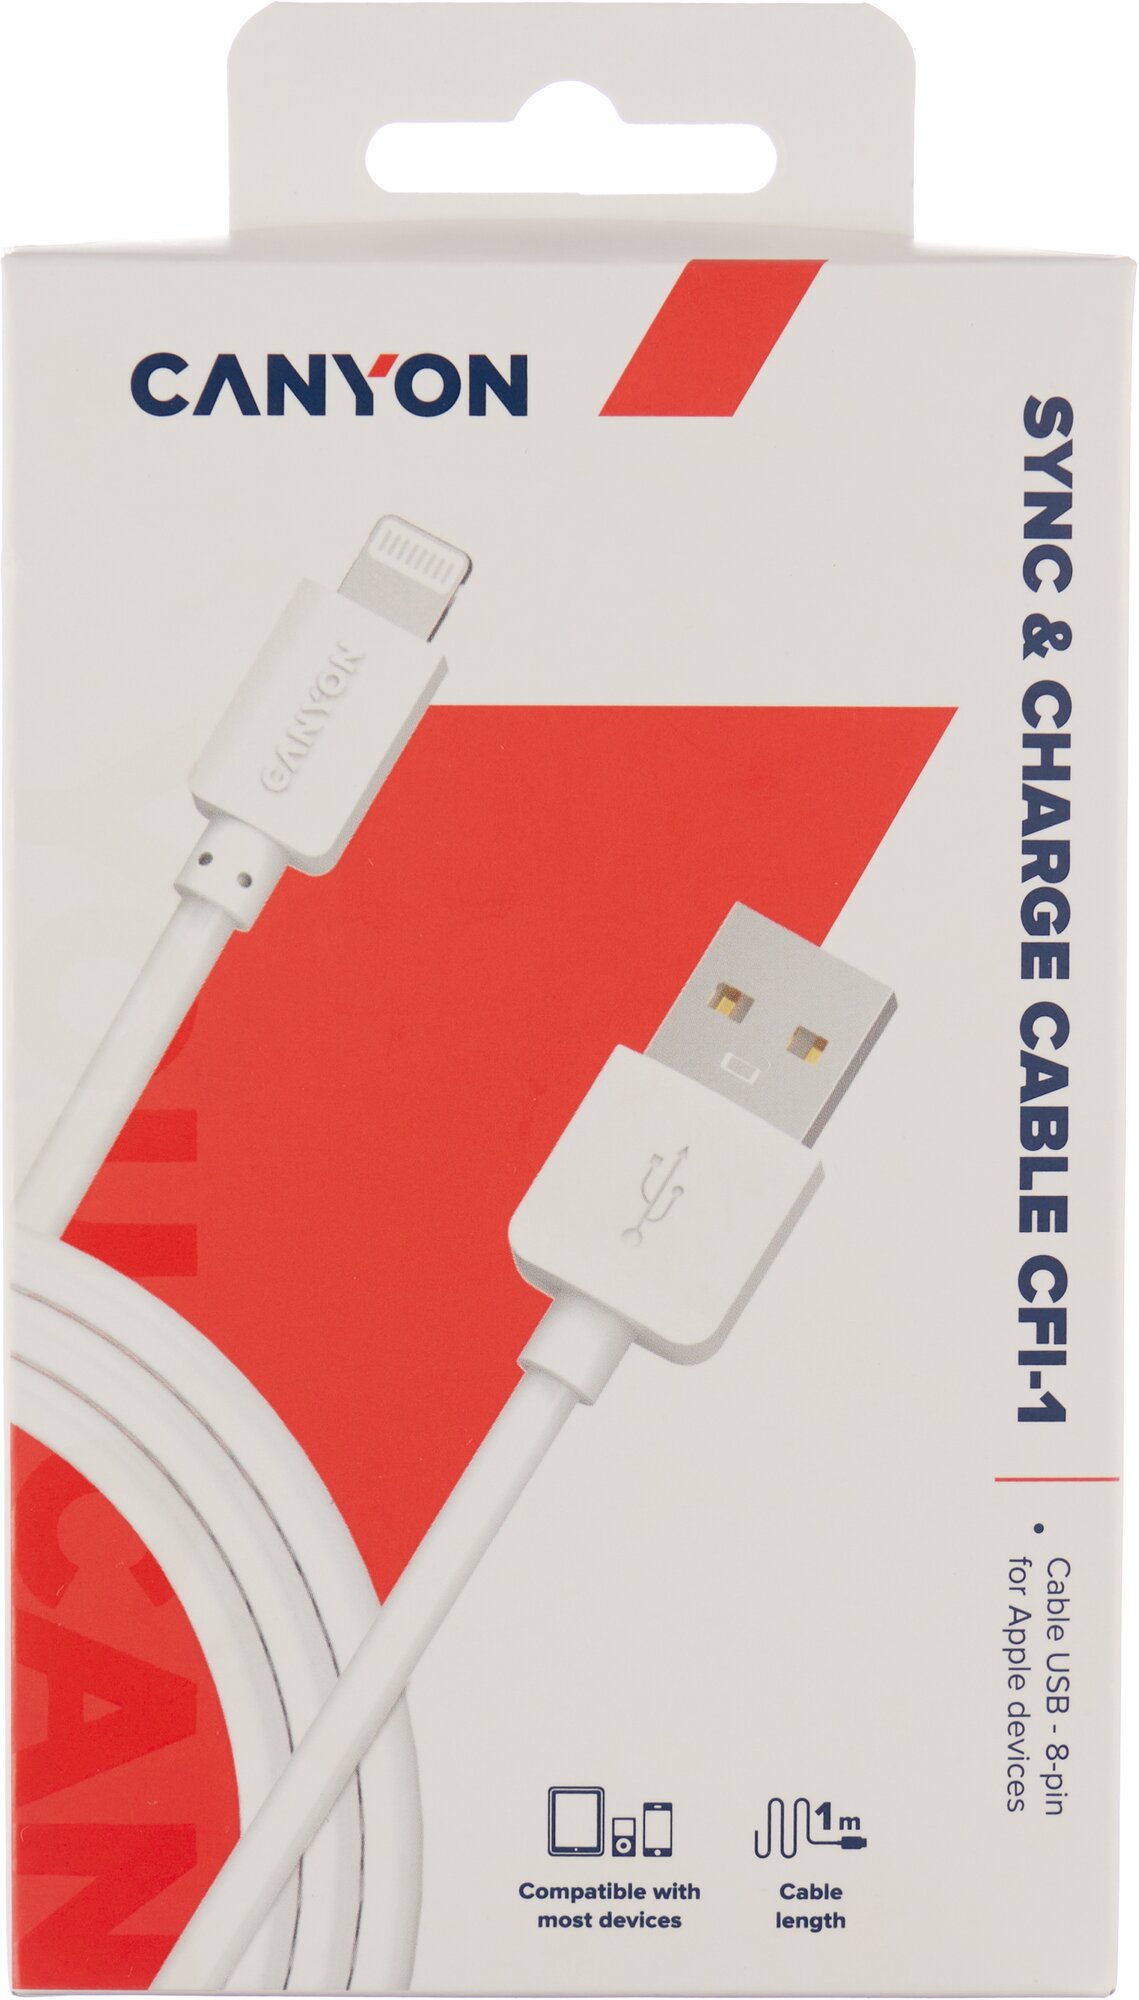 Кабель для iPad / iPhone 8-pin Lightning - USB 2.0 Canyon CFI-1, 1м., белый